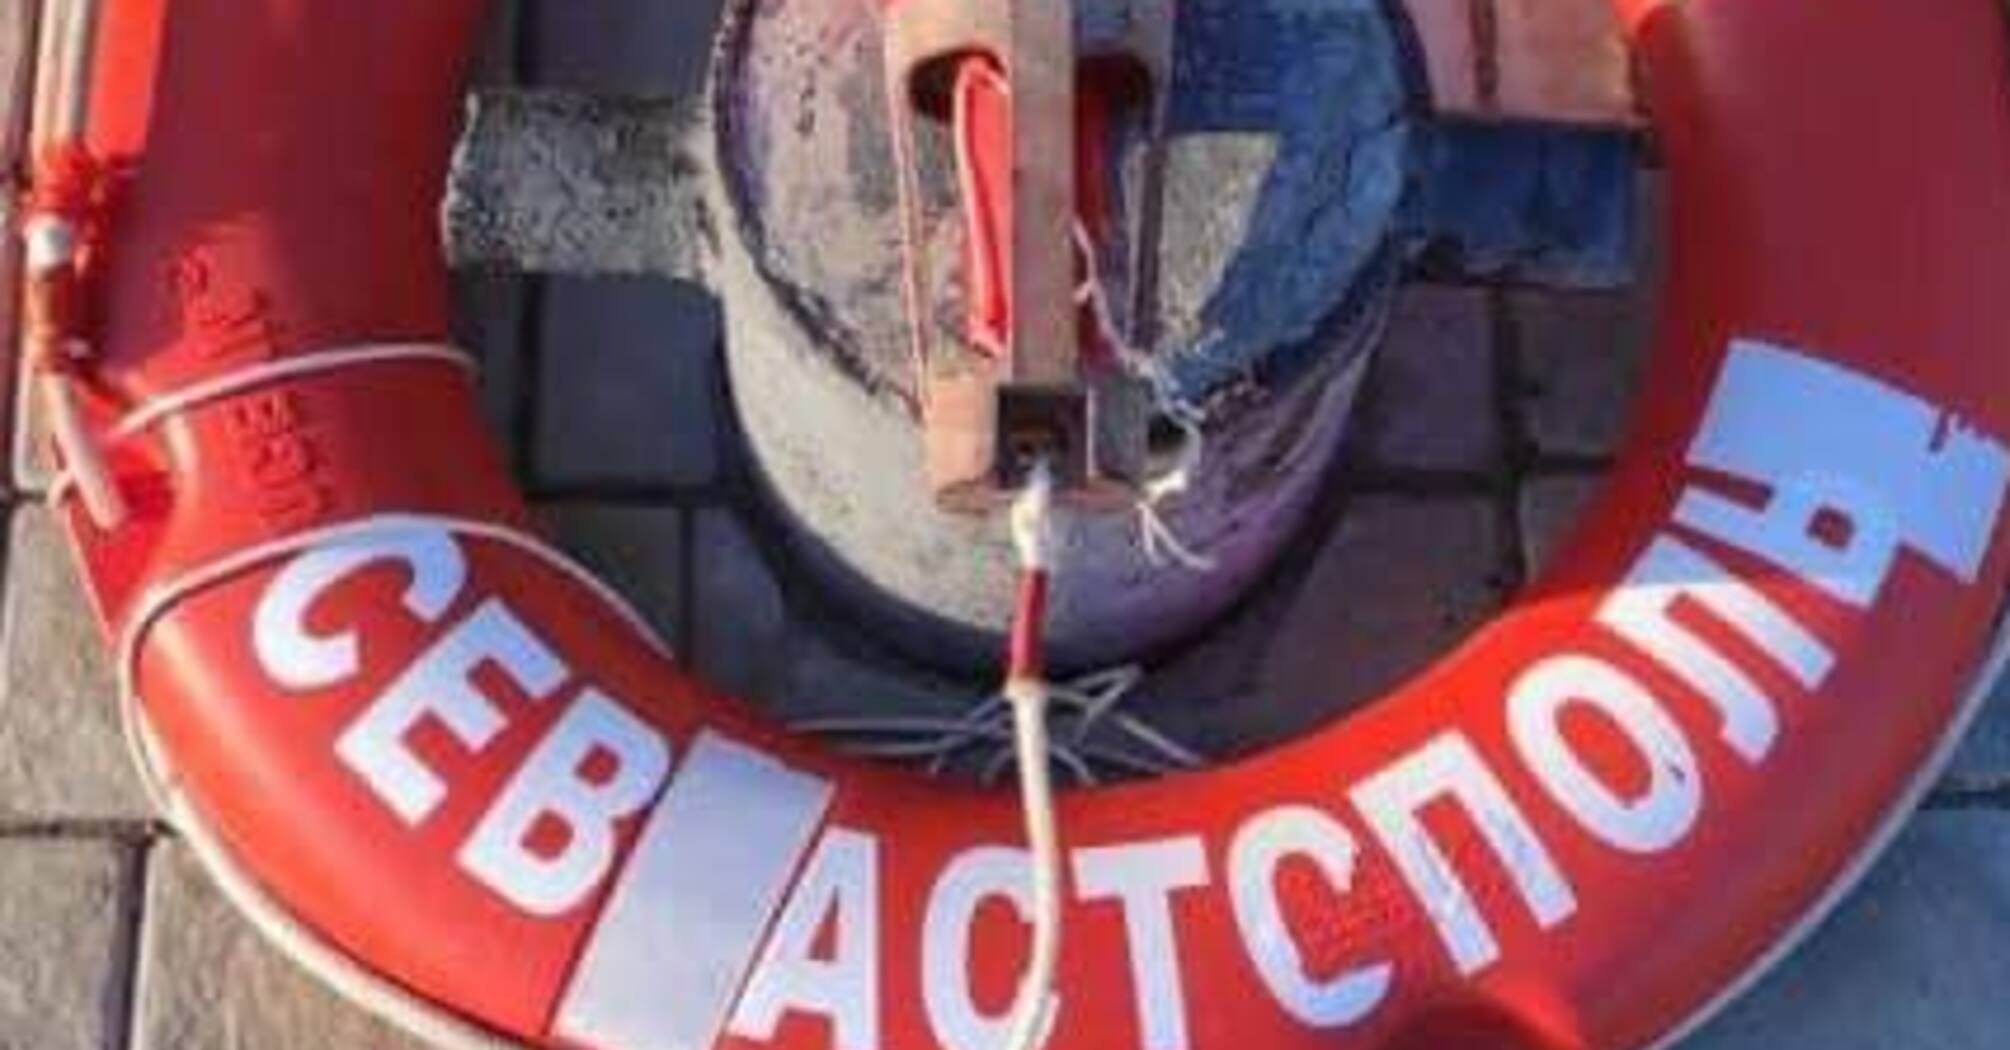 Залишки флагмана: прикордонники 'затрофеїли' предмети із затонулого крейсера ЧФ 'Москва'